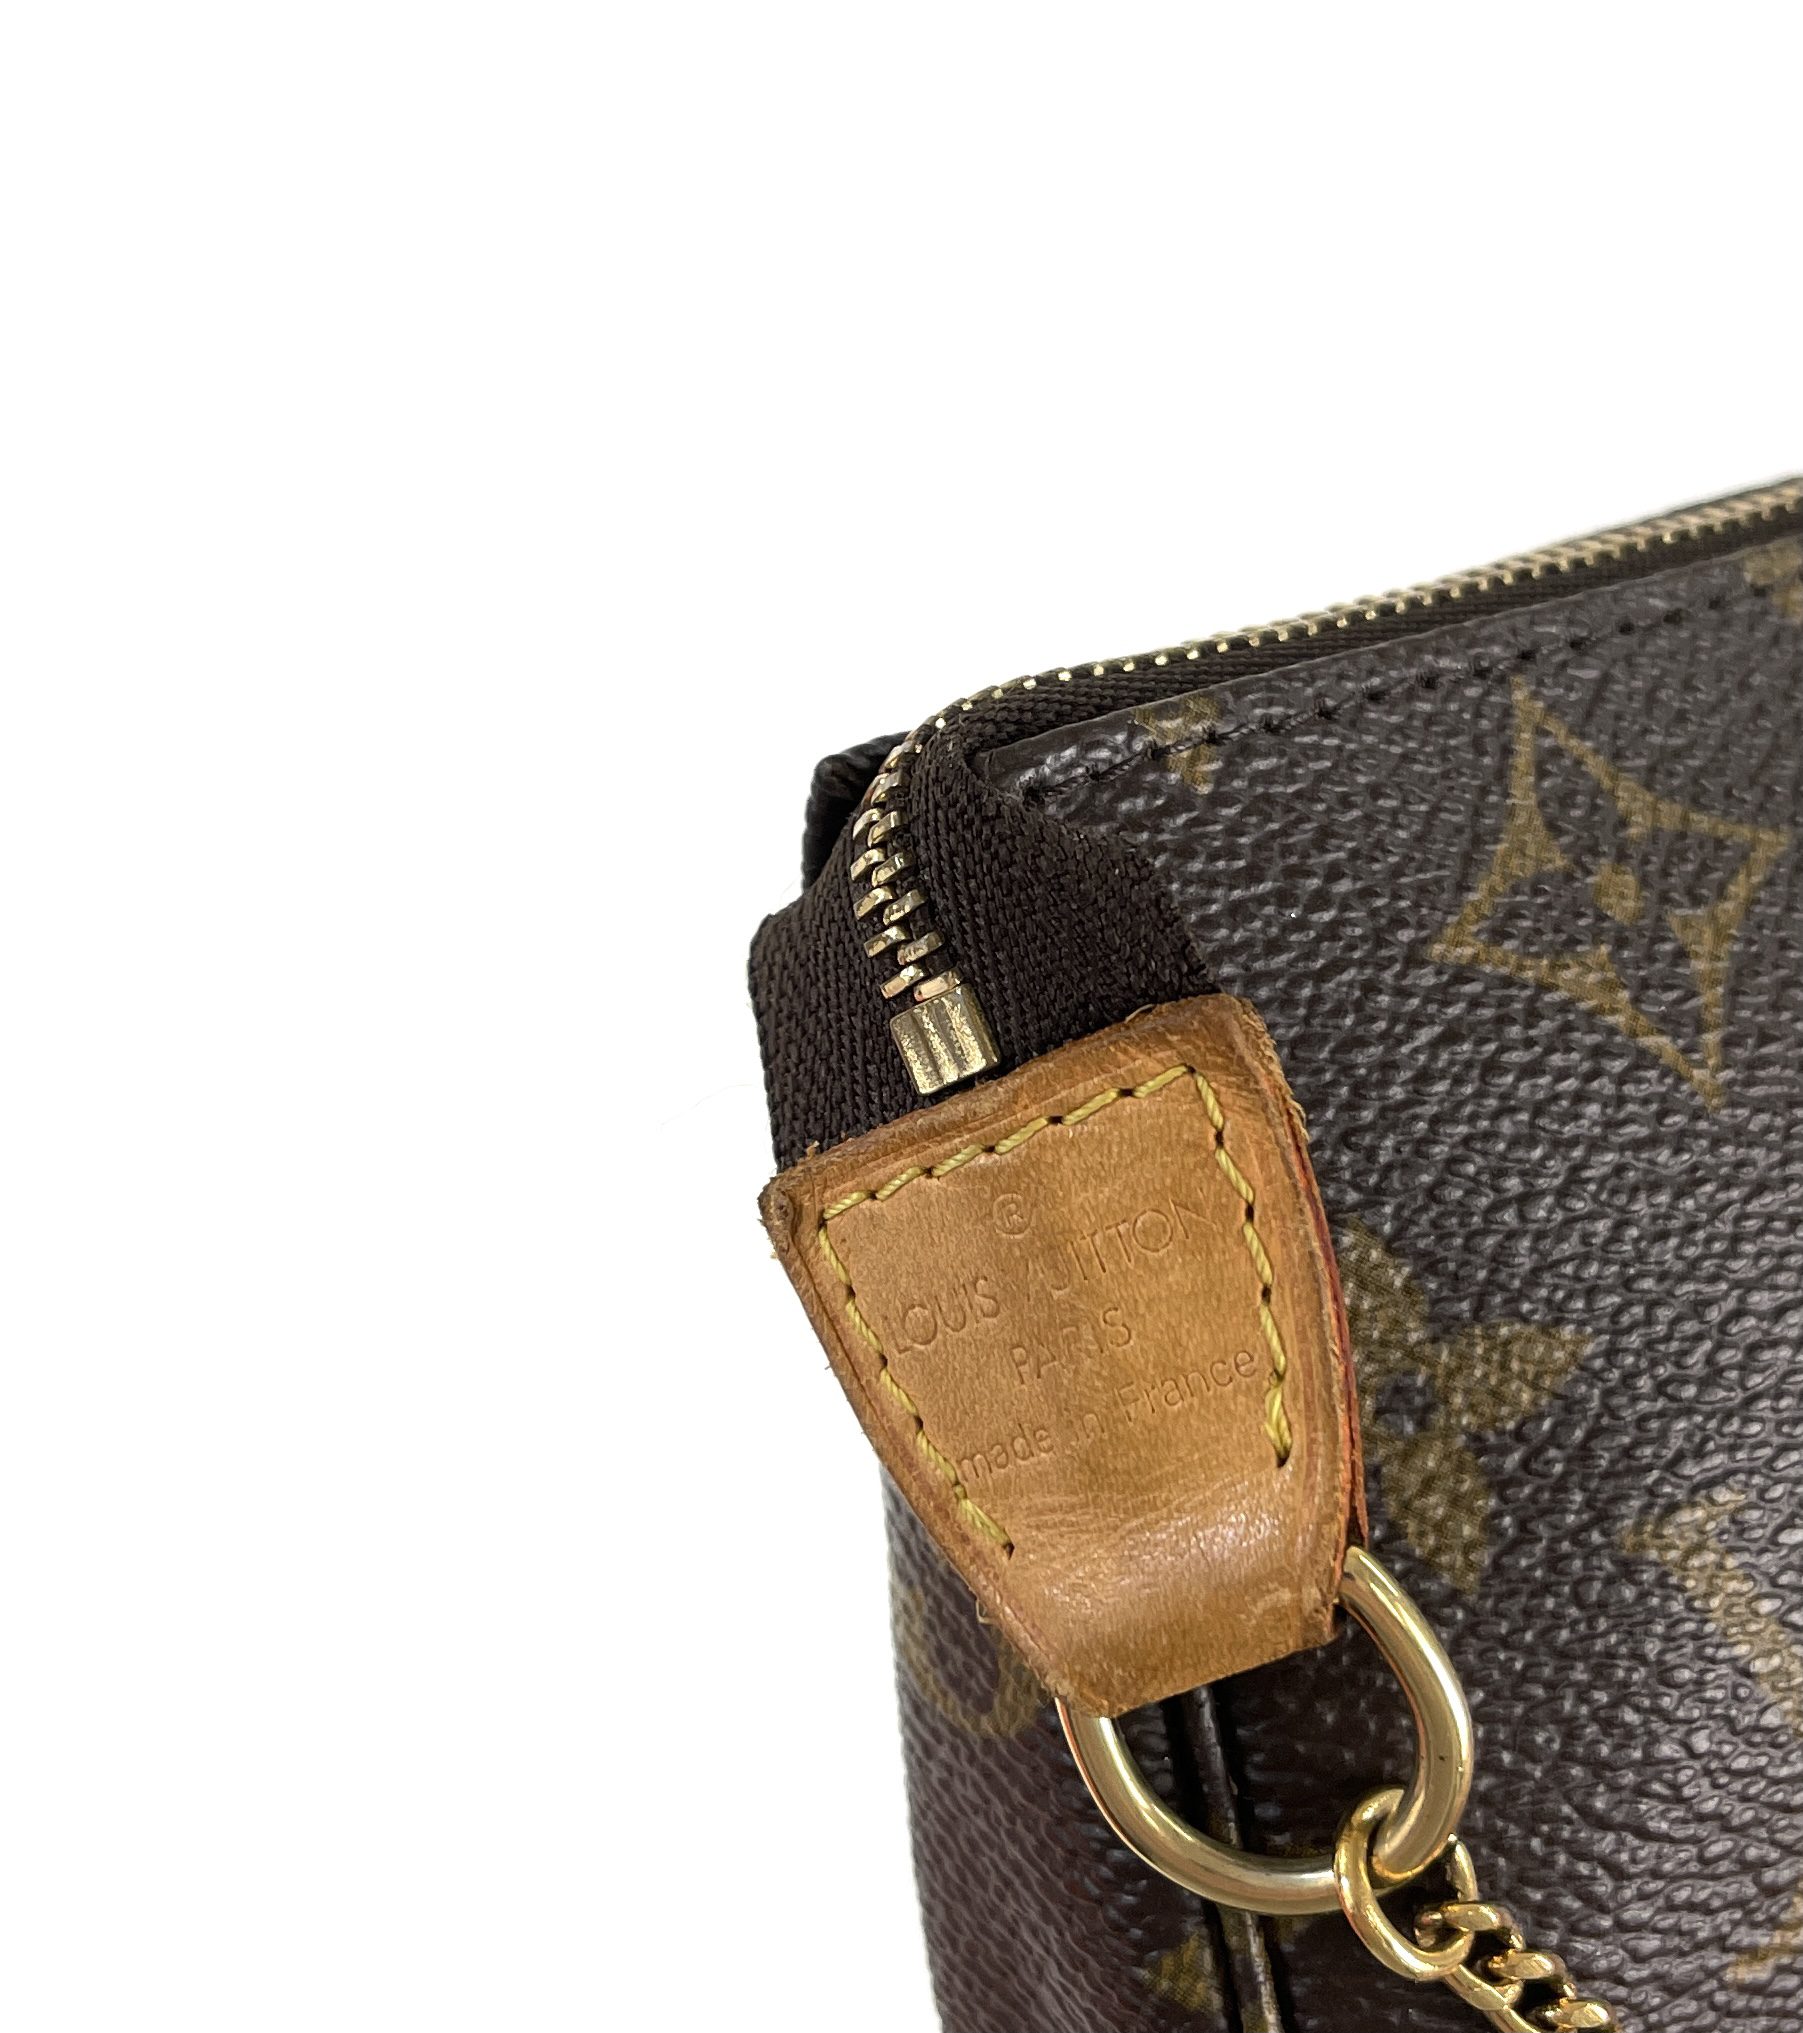 Louis Vuitton 2022 Micro Speedy Bag Charm - Brown Bag Accessories